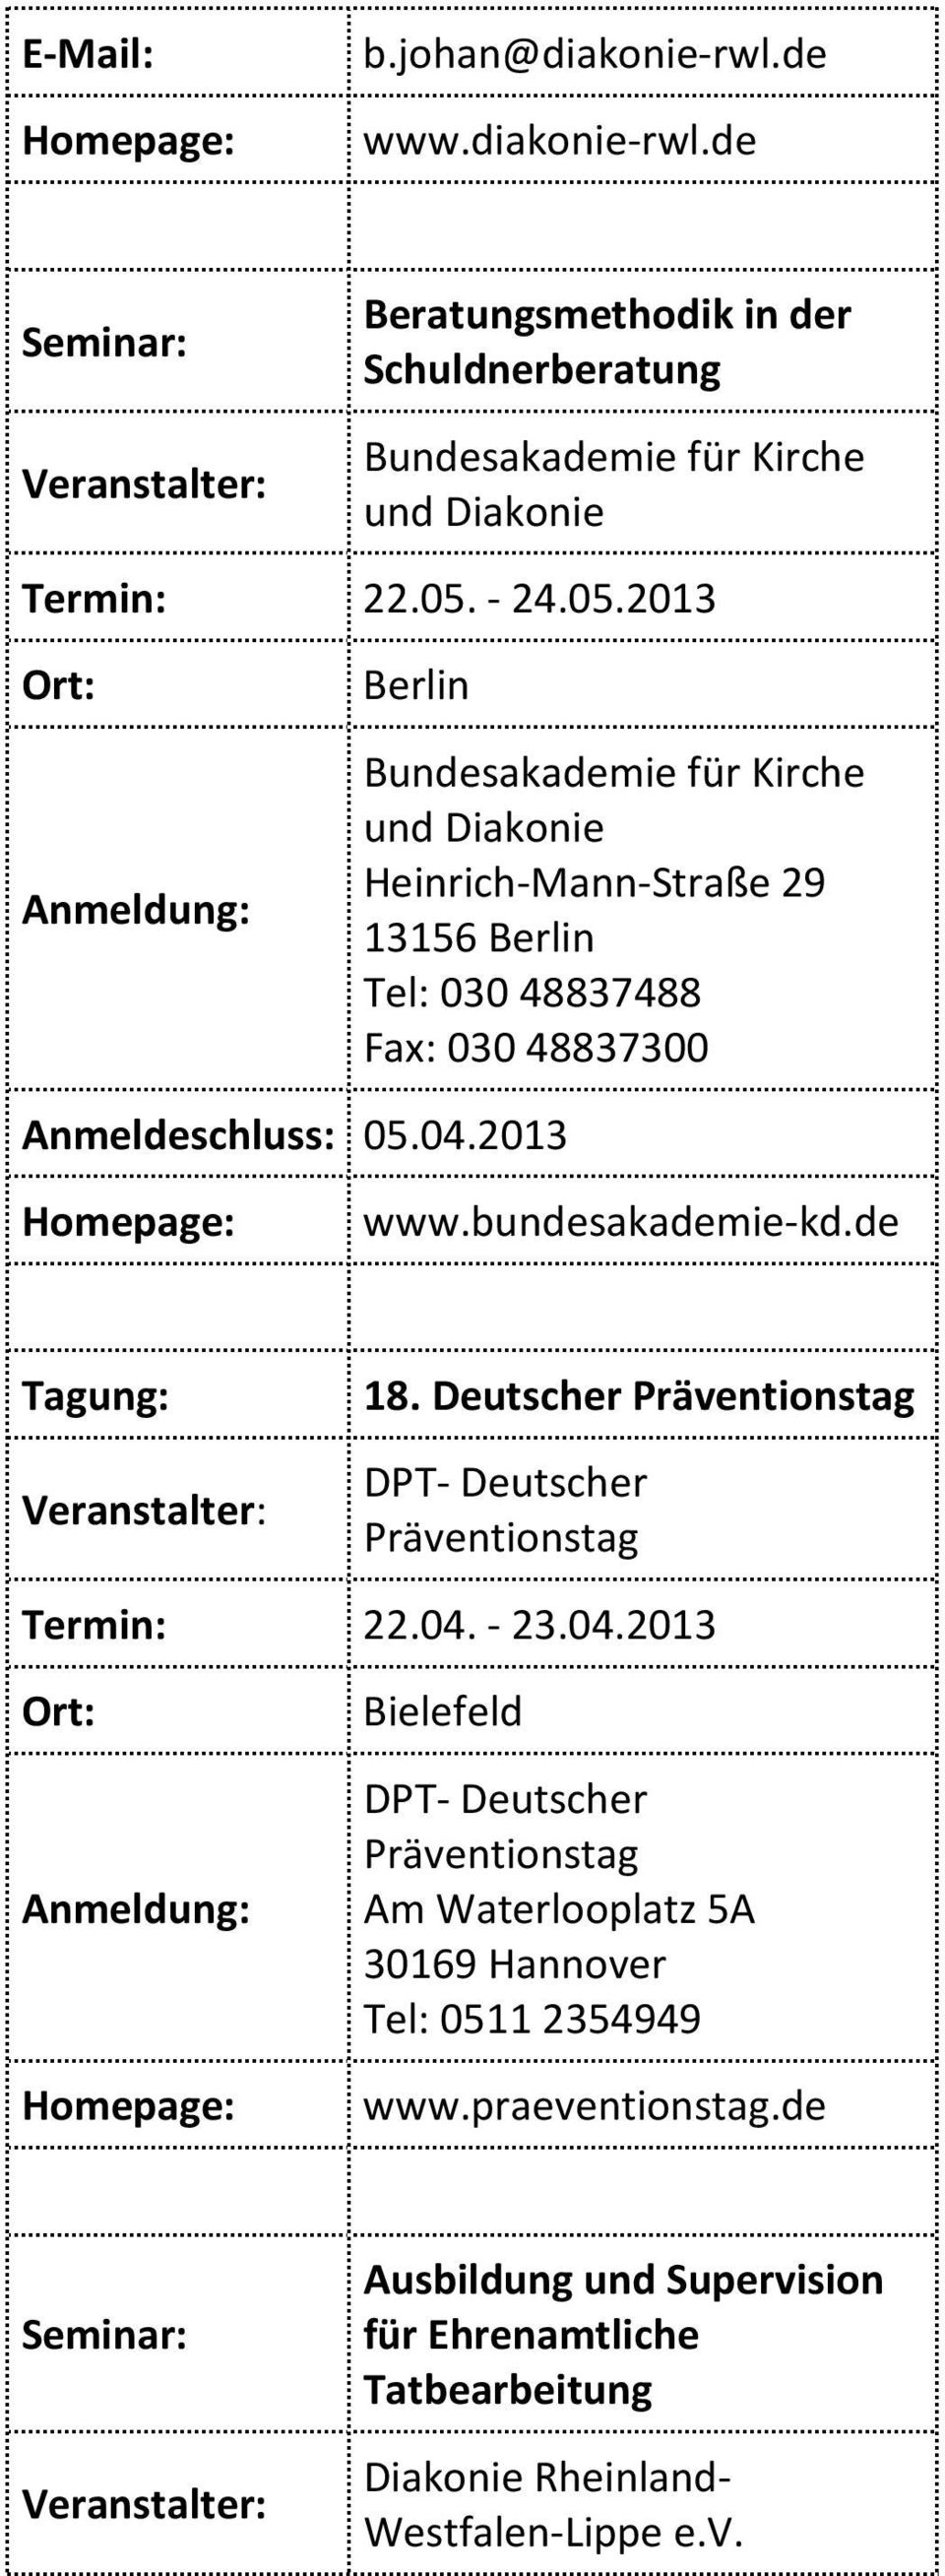 2013 Berlin Bundesakademie für Kirche und Diakonie Heinrich-Mann-Straße 29 13156 Berlin Tel: 030 48837488 Fax: 030 48837300 Anmeldeschluss: 05.04.